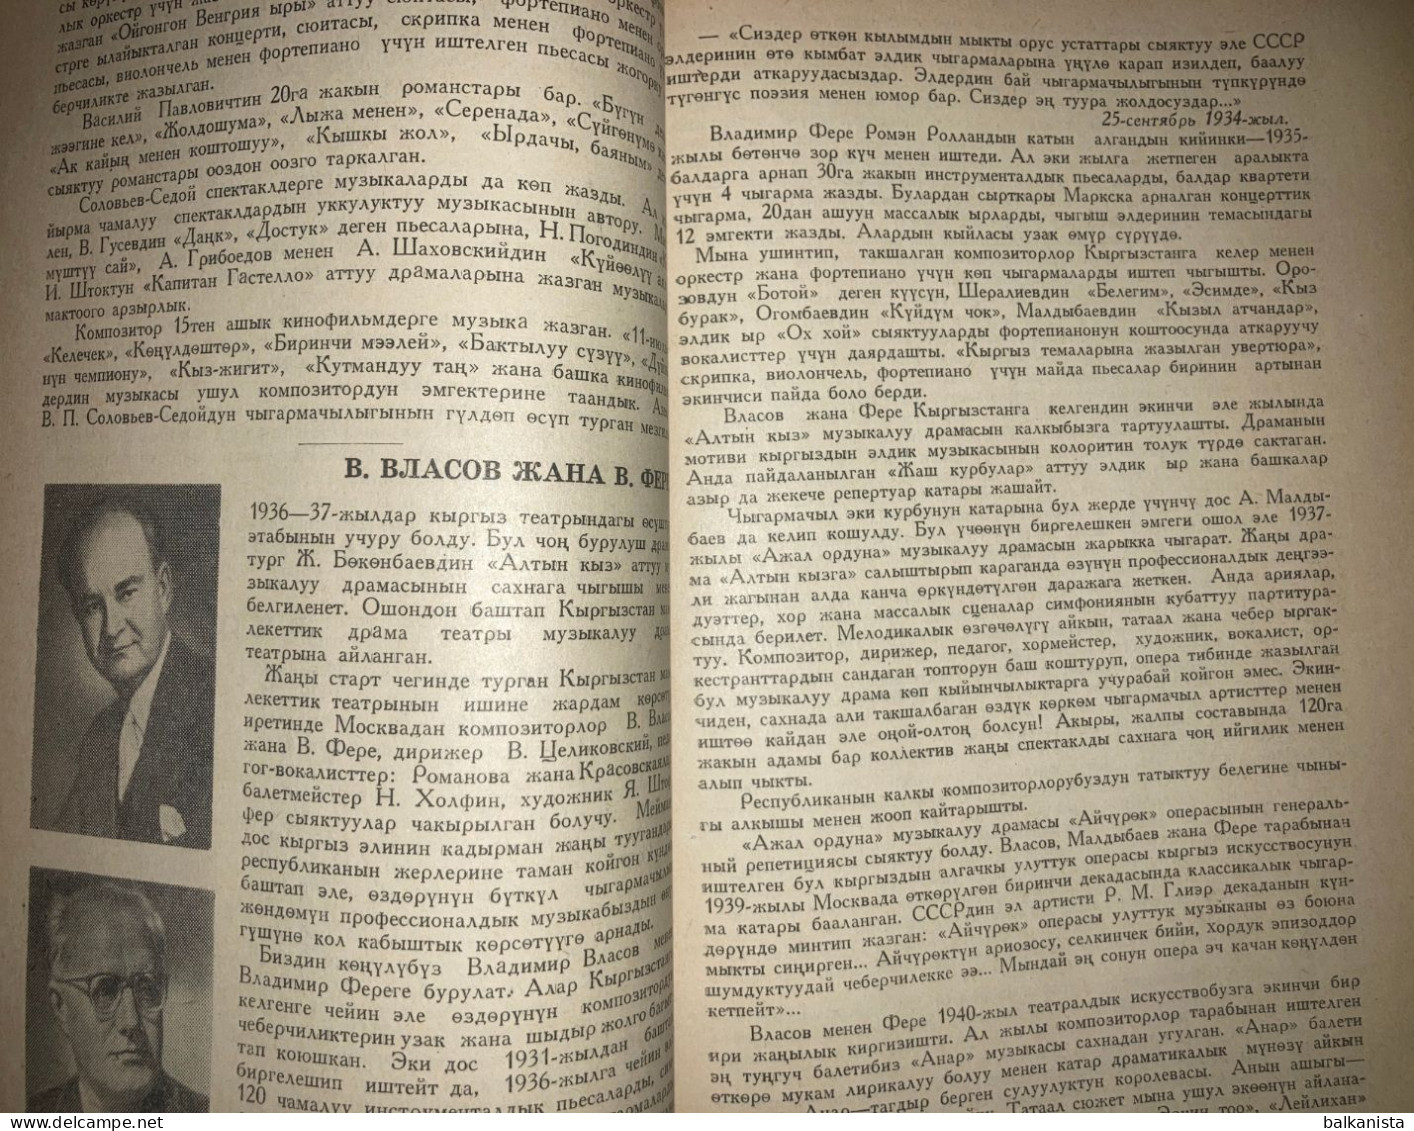 АЛА-ТОО Kyrgyzstan Ala - Too Literature Magazine 1963 No: 6 - Tijdschriften